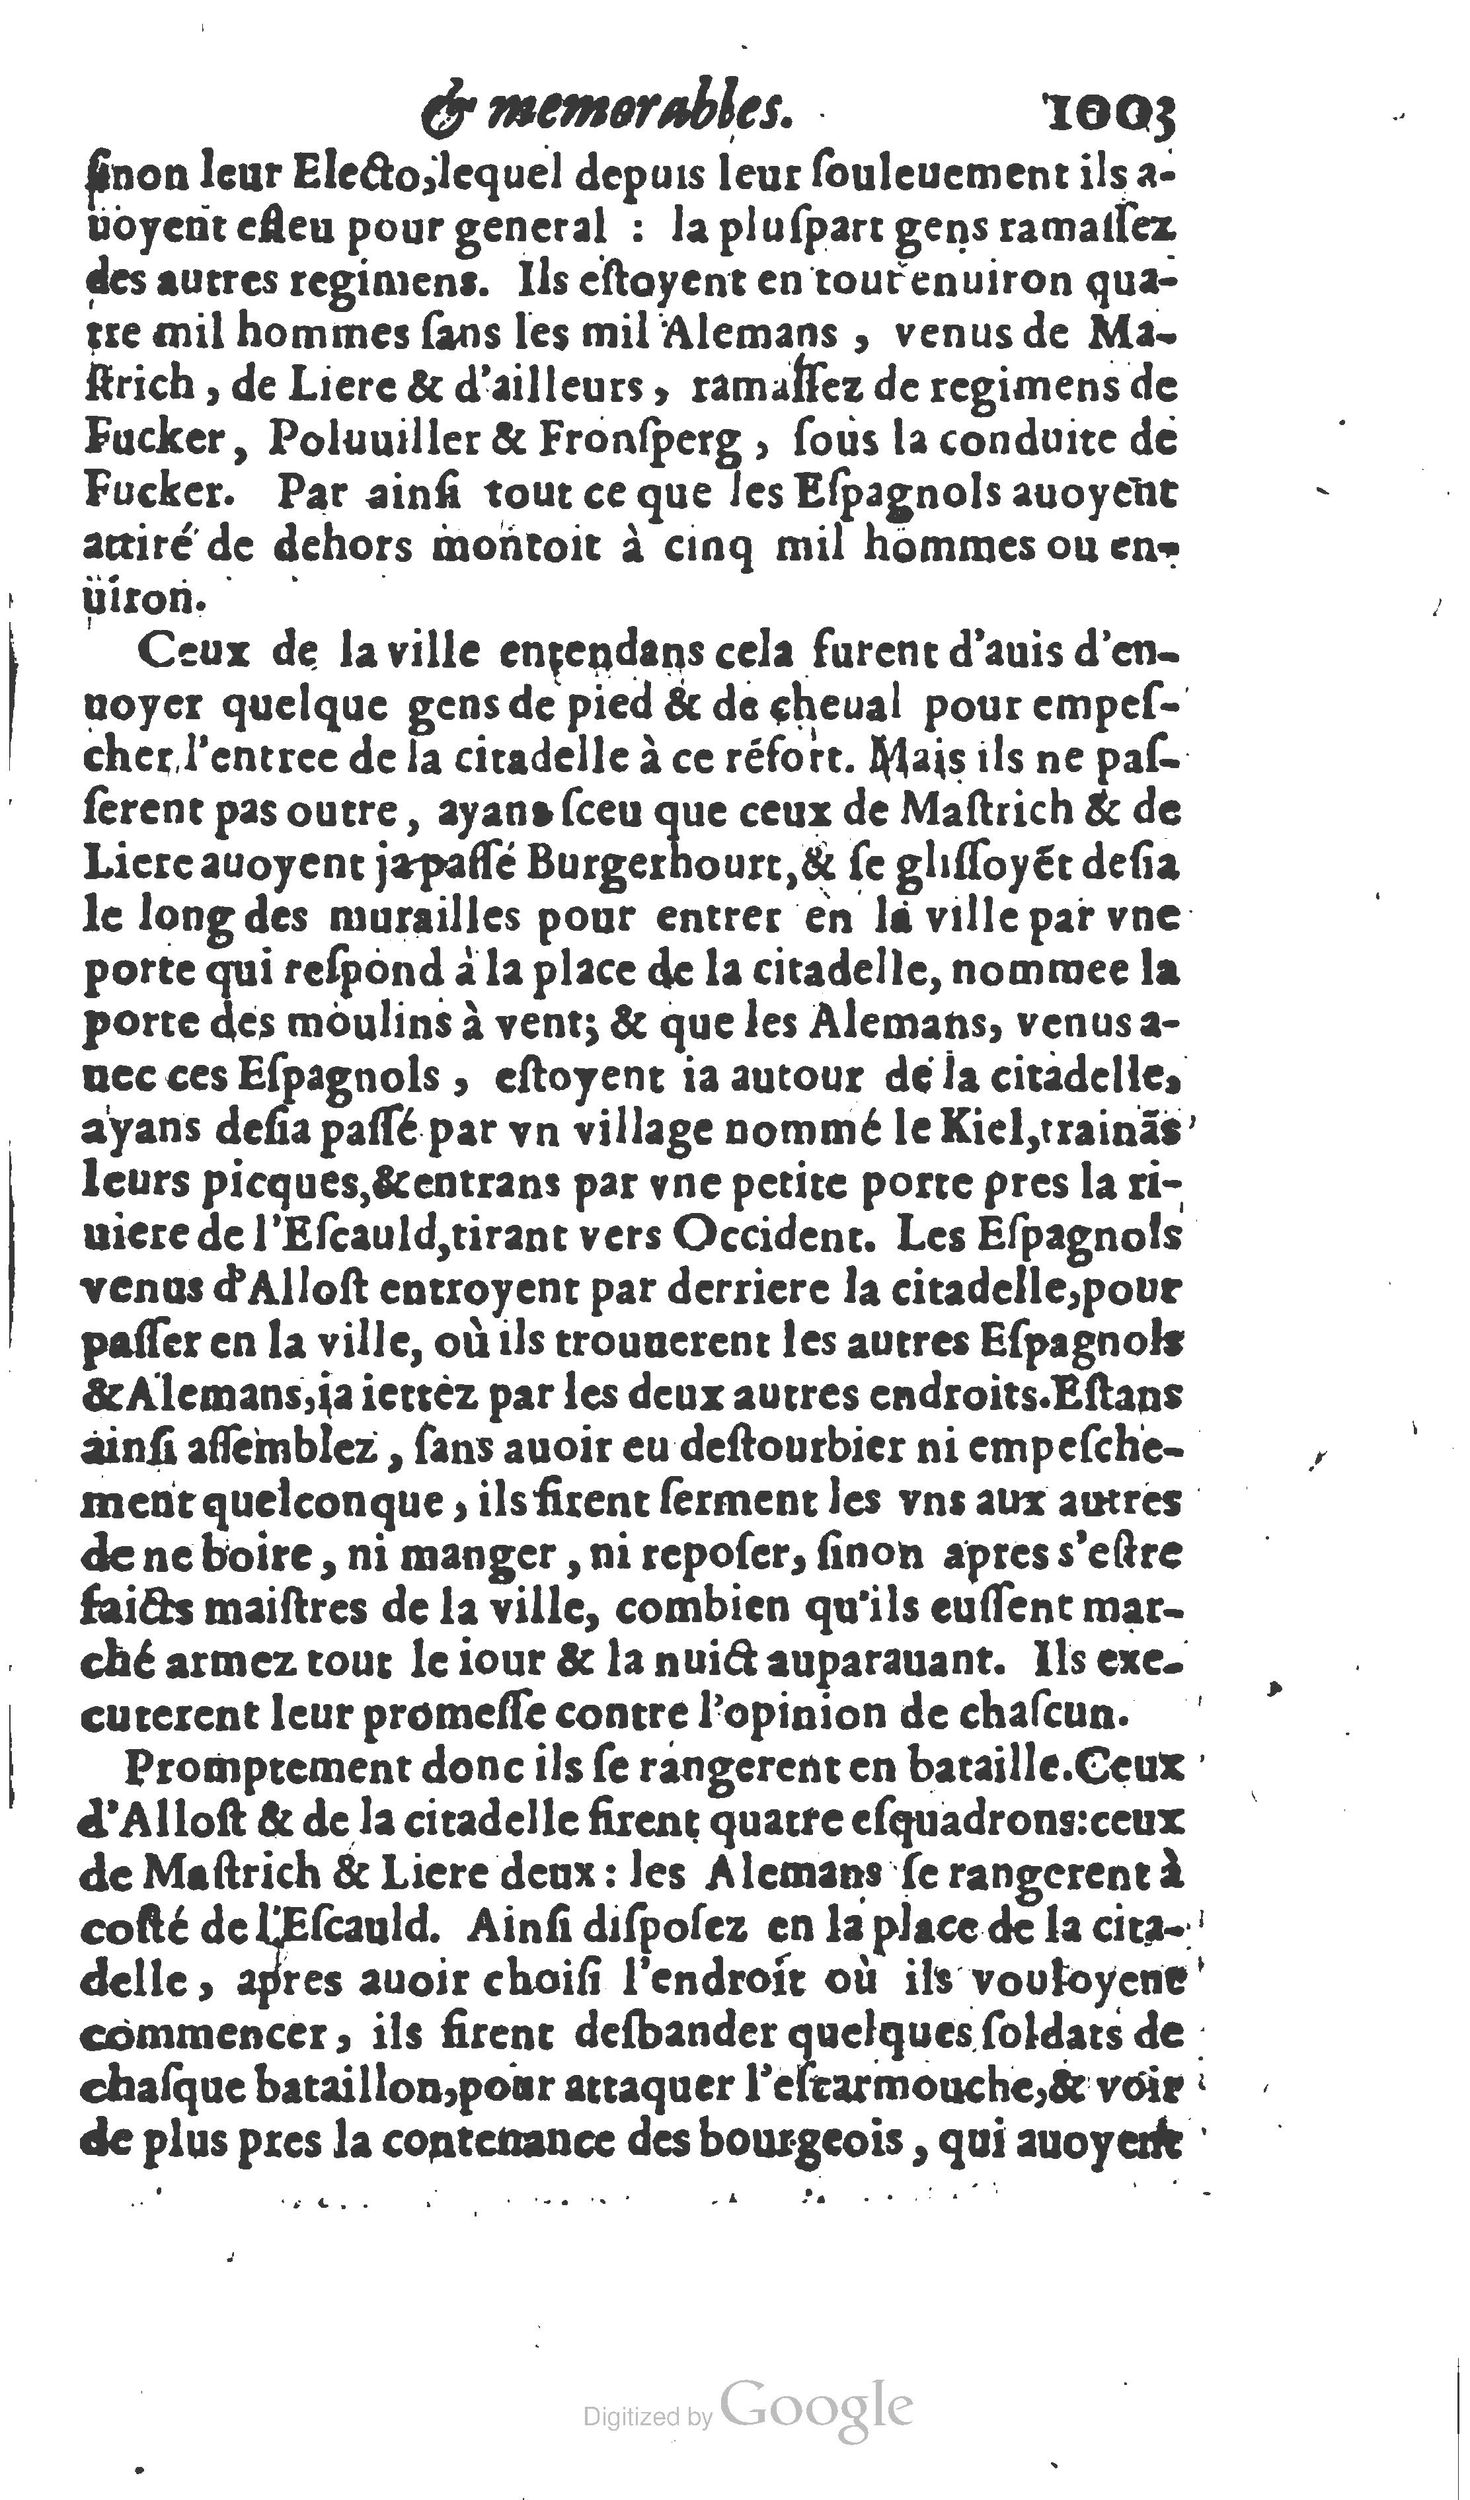 1610 Trésor d’histoires admirables et mémorables de nostre temps Marceau Princeton_Page_1024.jpg